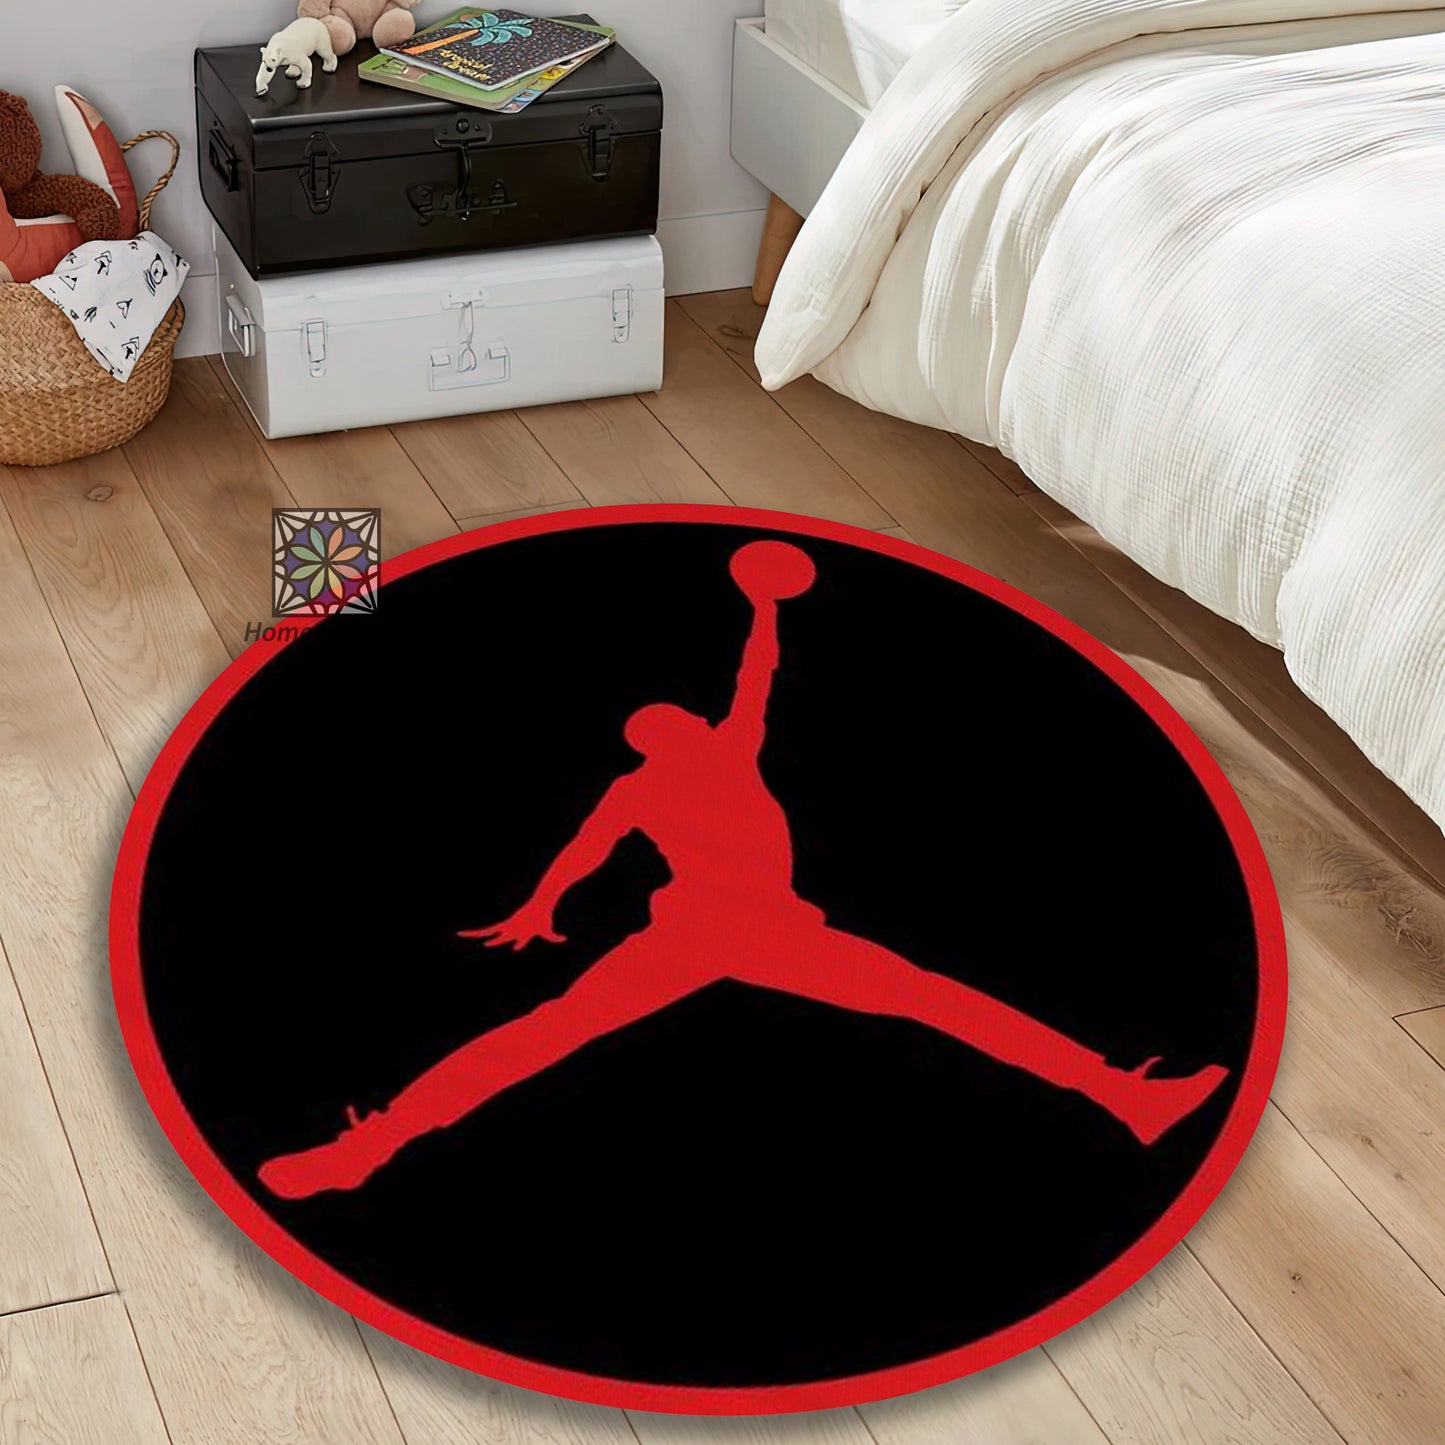 Red Jump Man Rug, Sneaker Room Mat, NBA carpet, Air Jordan Decor, Michael Jordan Rug, Basketball Lover Gift